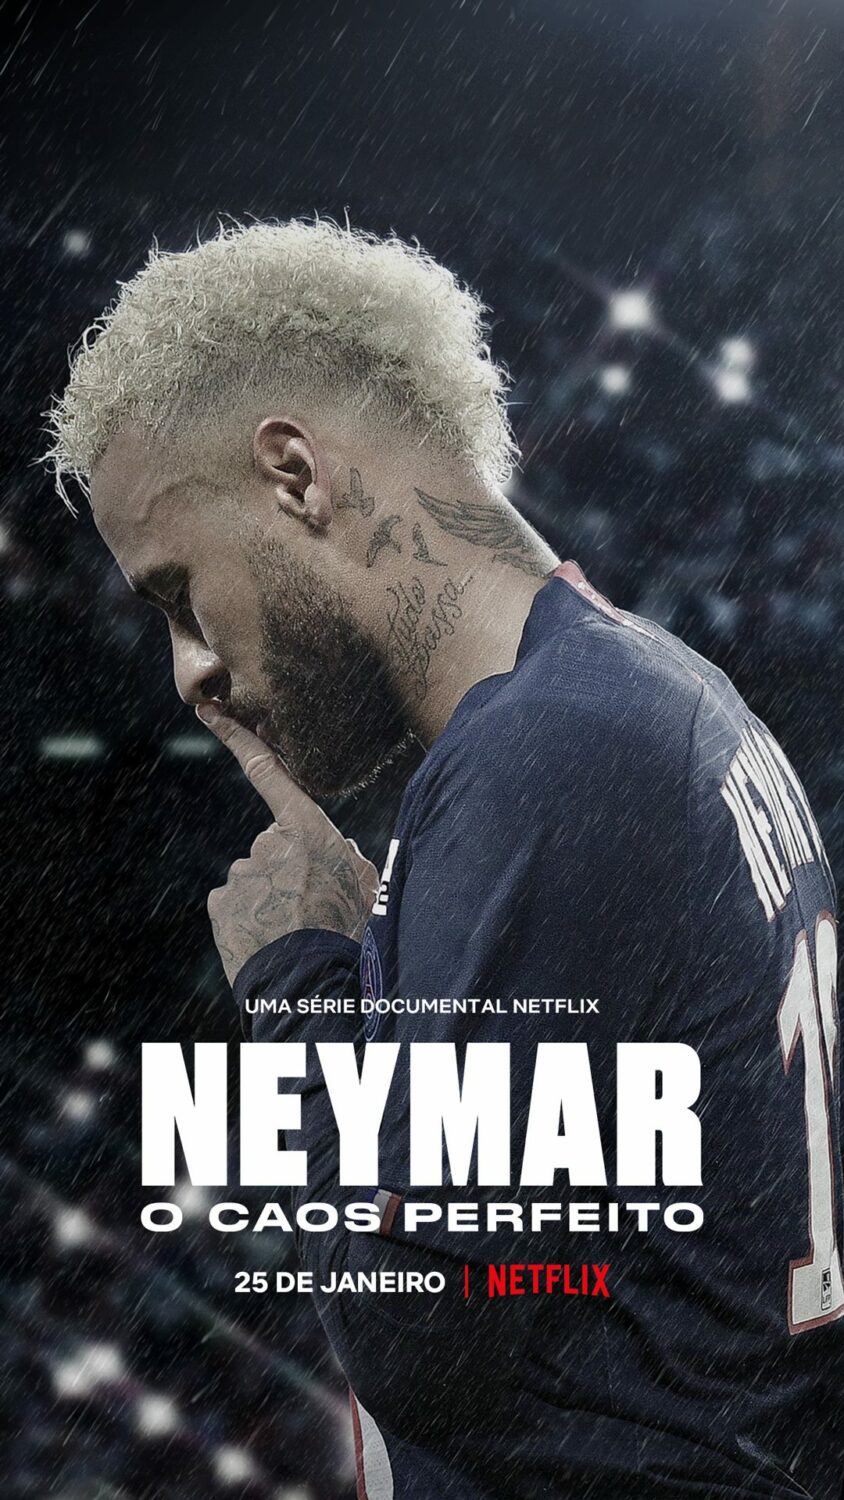 Neymar netflix